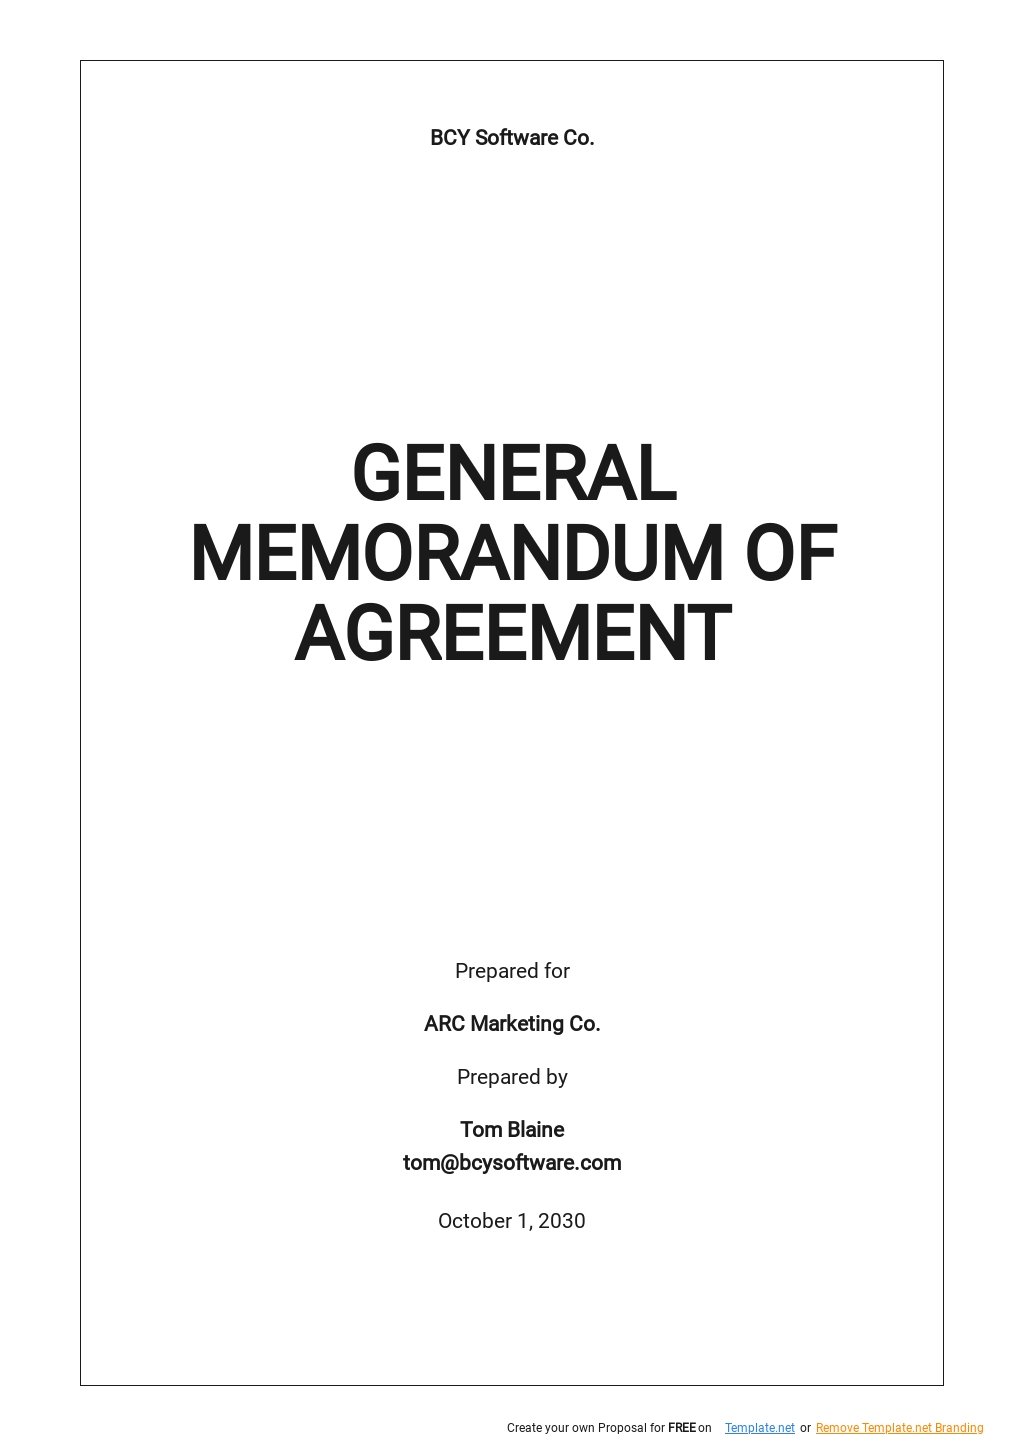 General Memorandum of Agreement Template.jpe